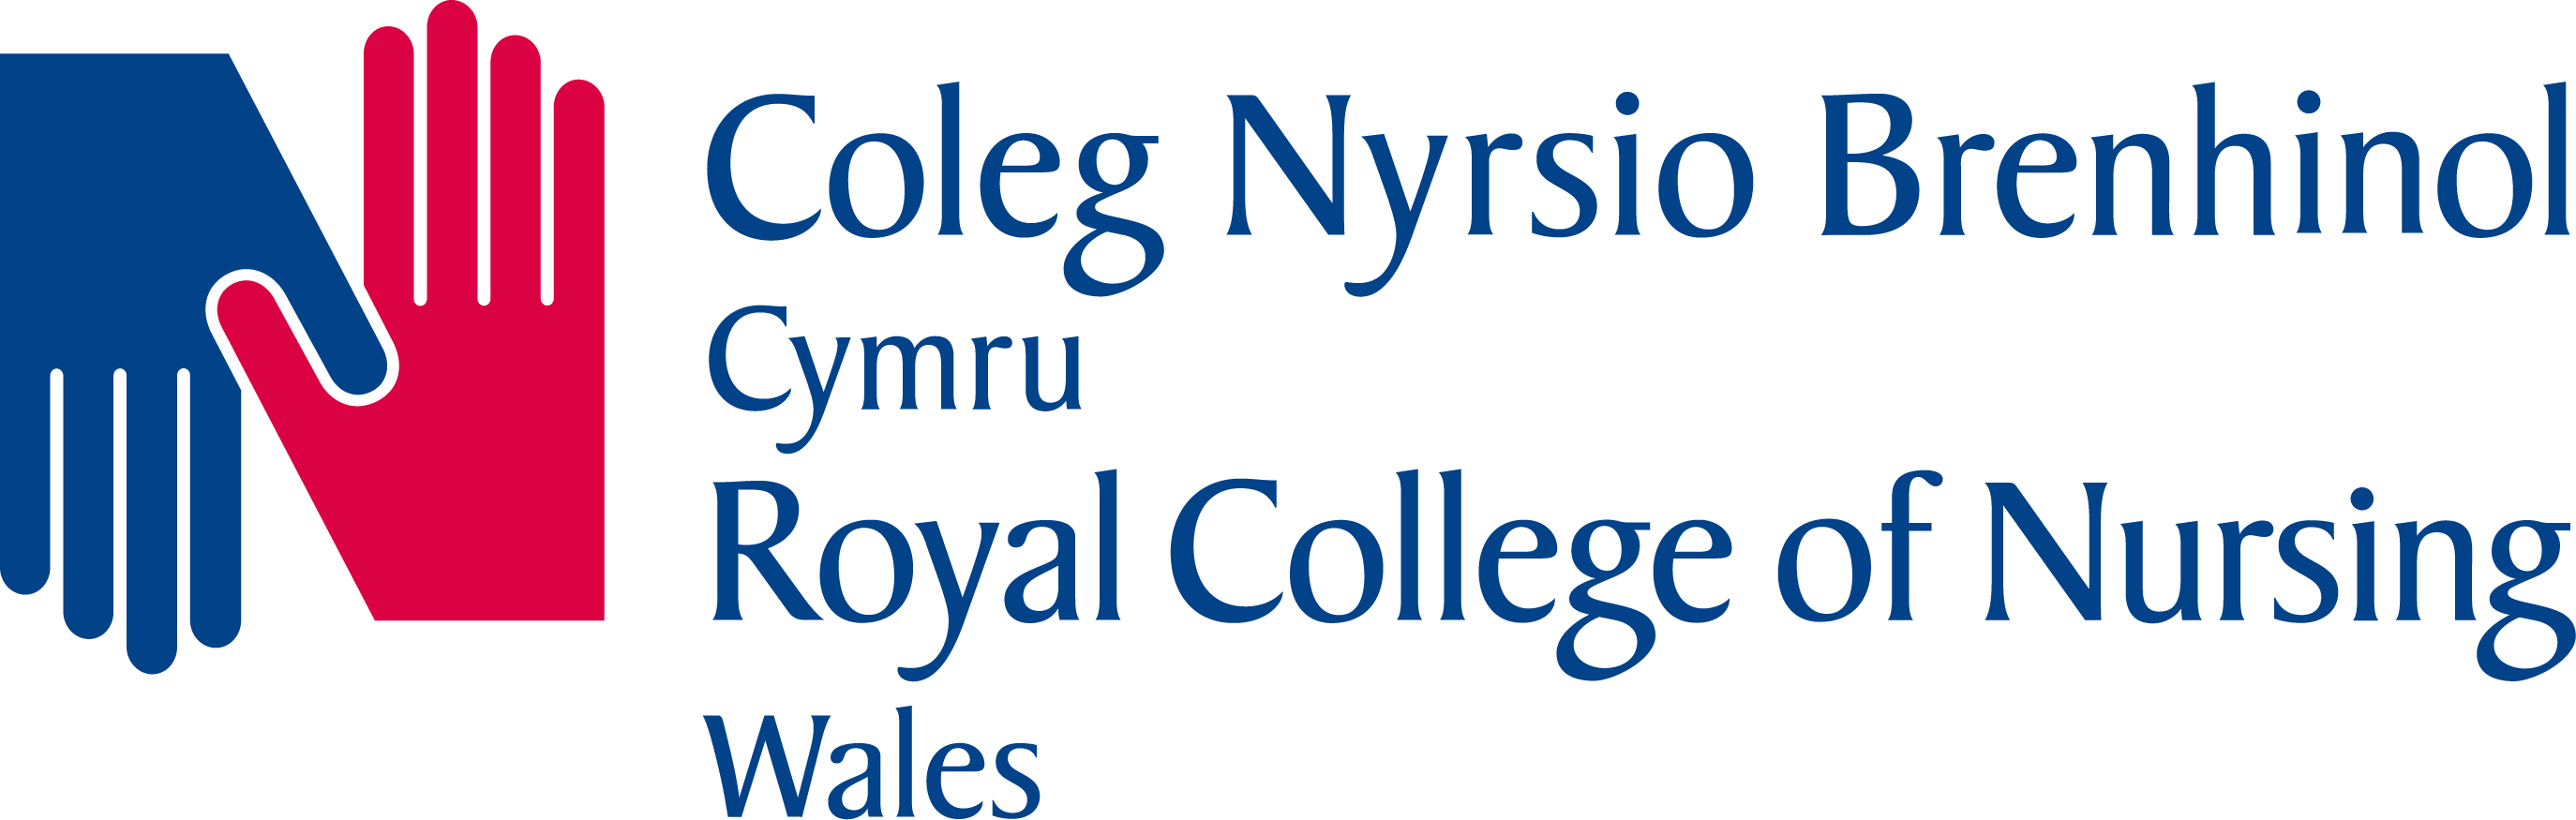 Royal College of Nursing Wales logo